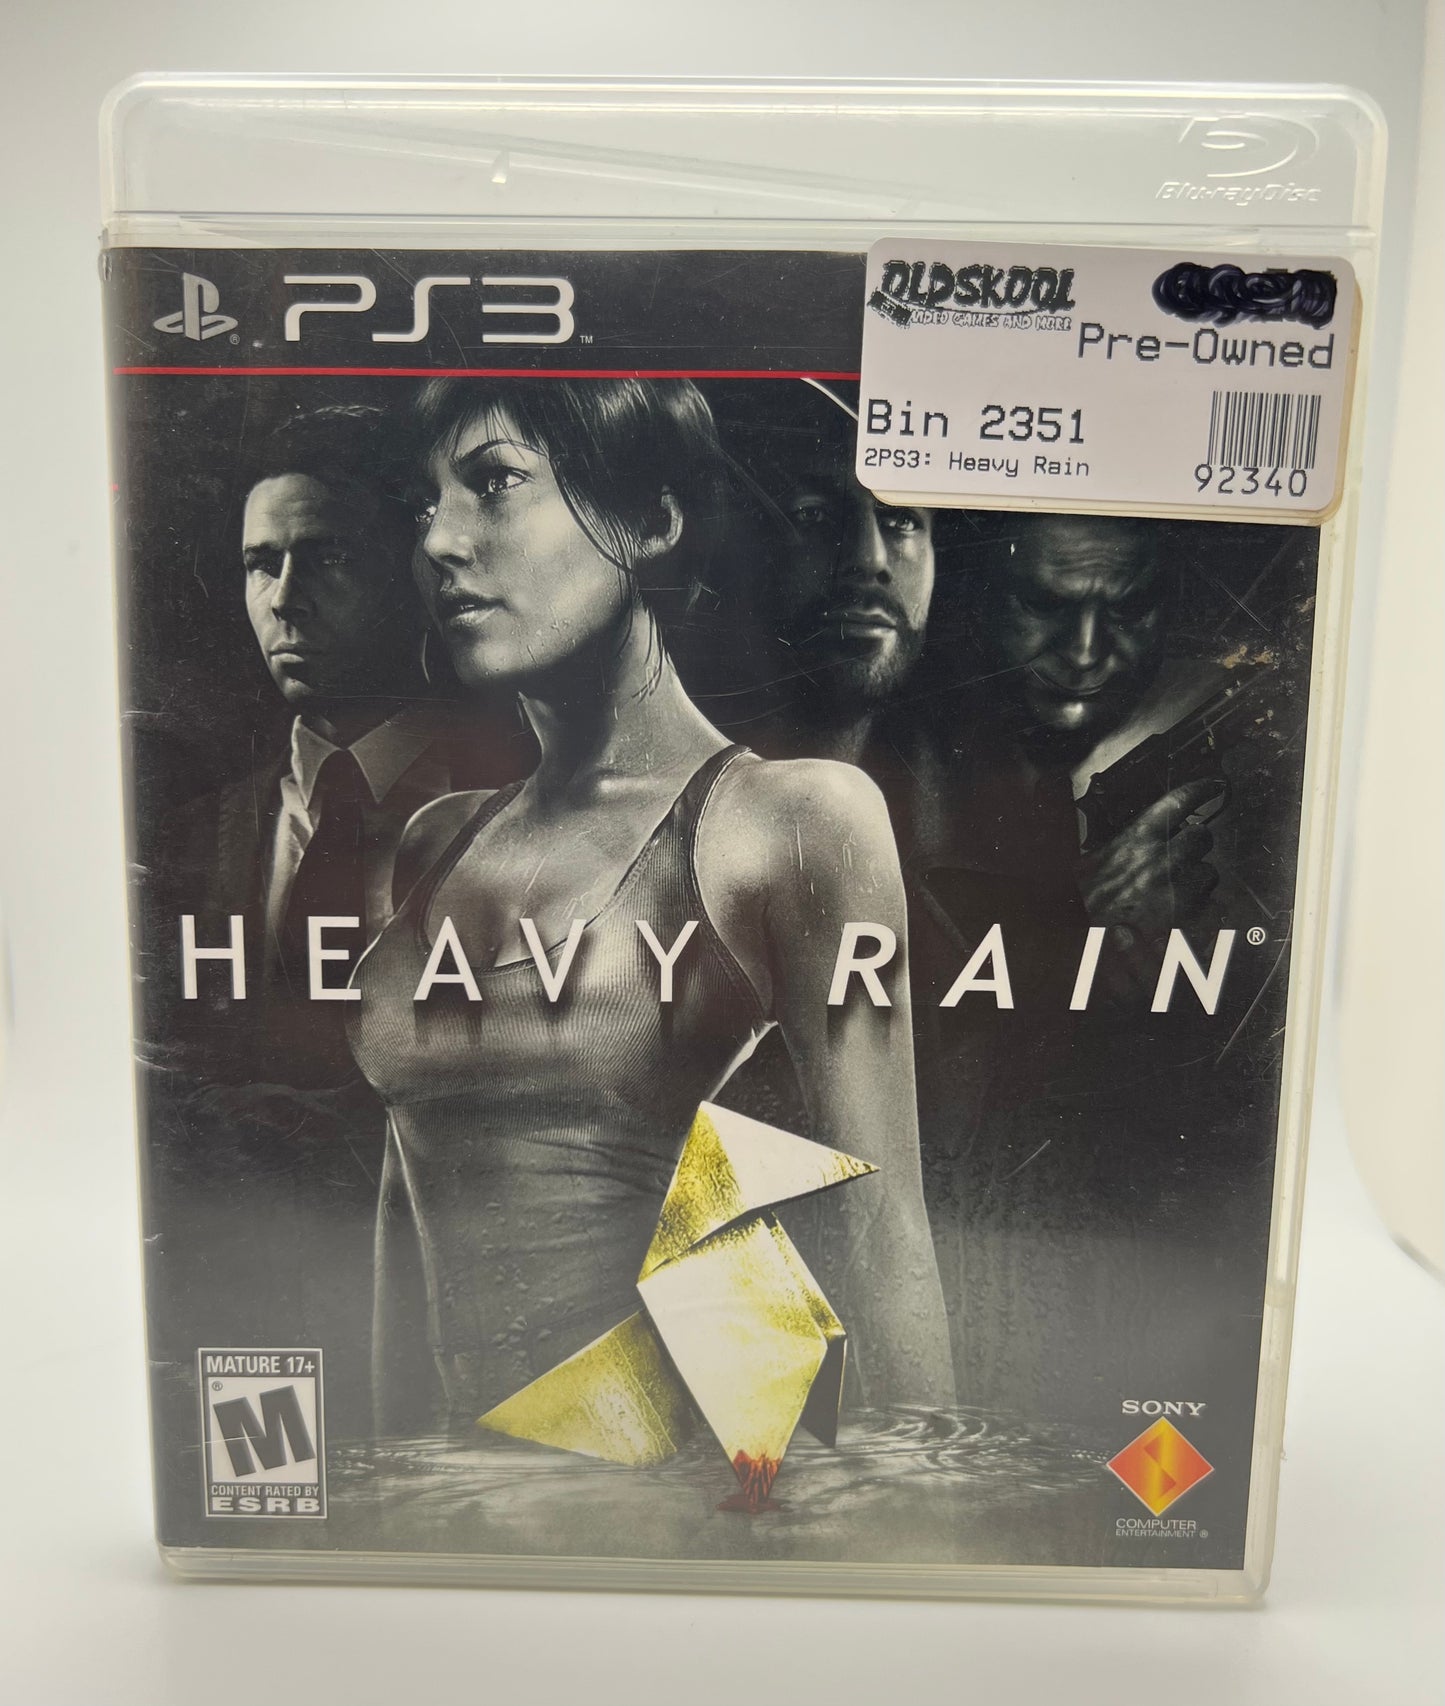 Heavy Rain - Playstation 3